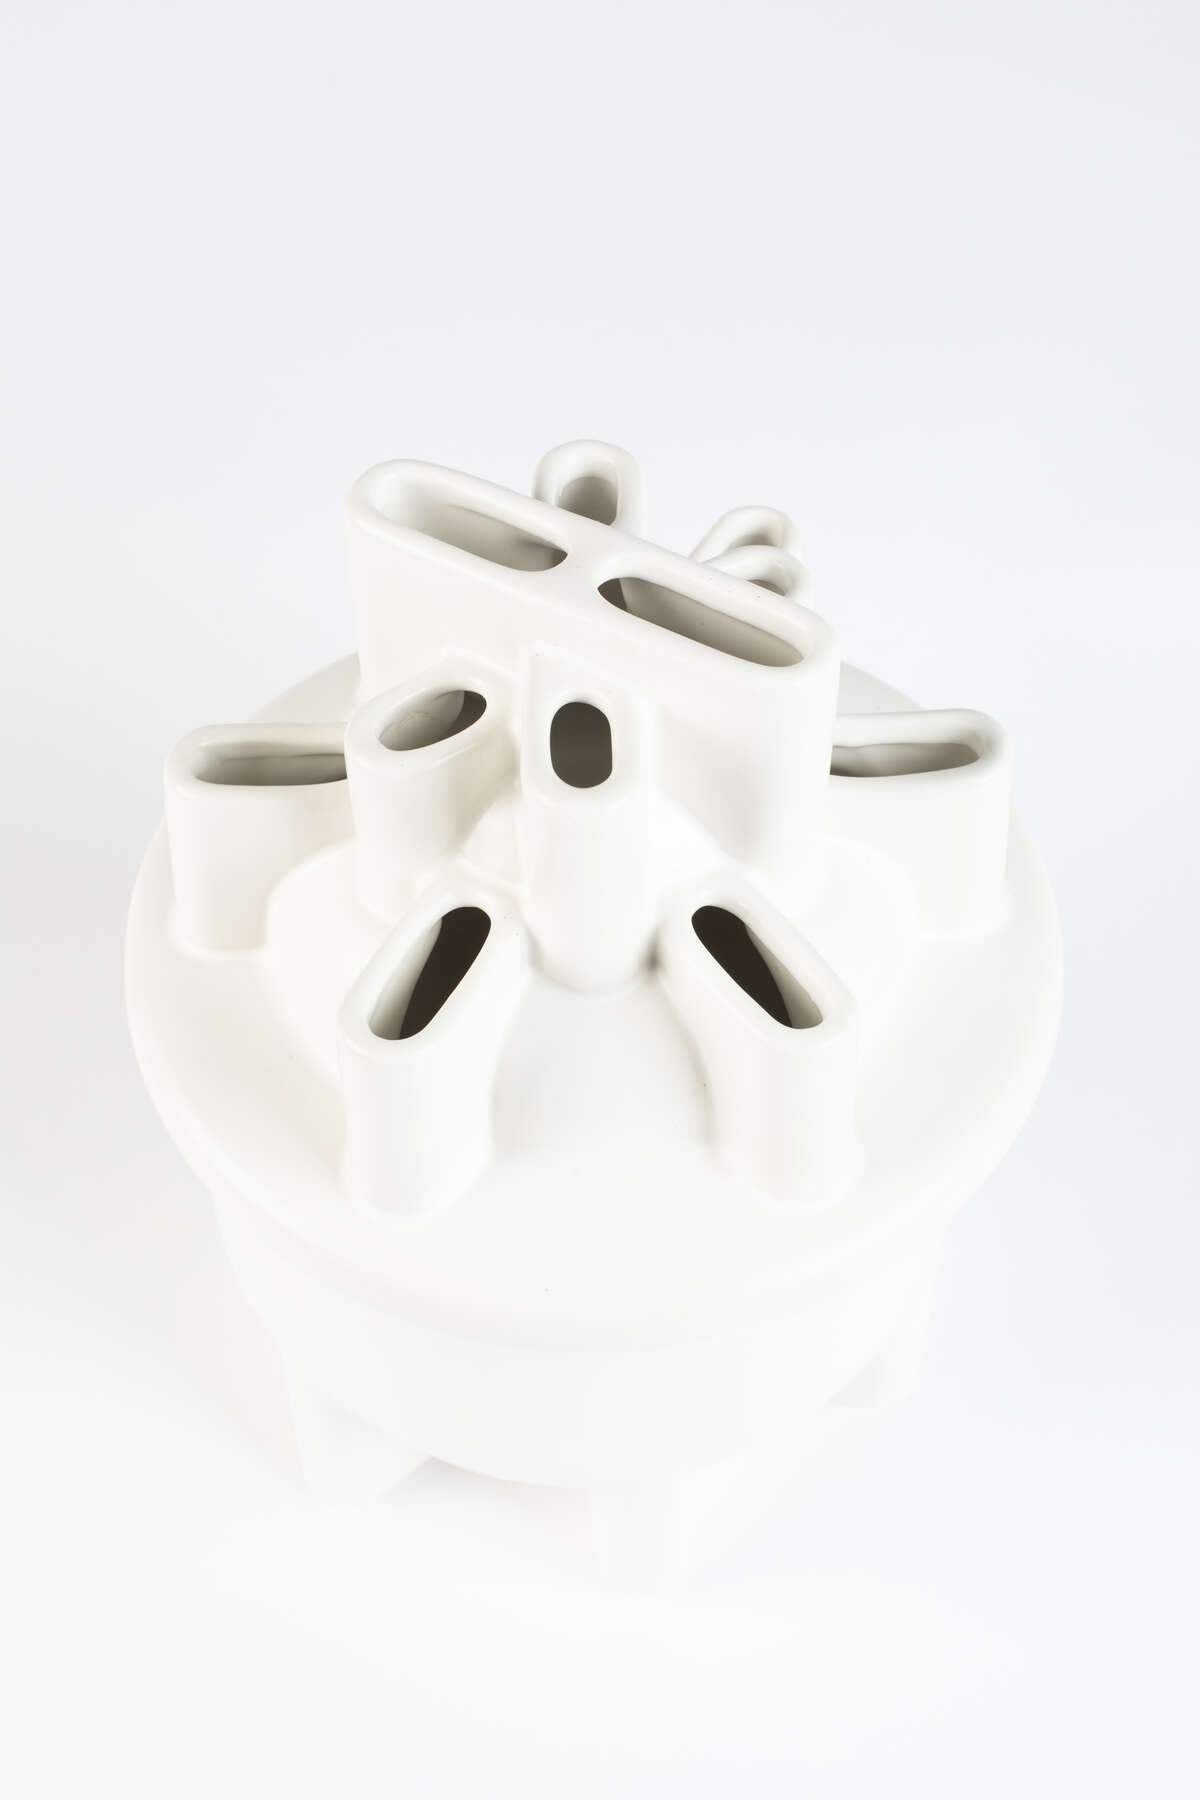 BASSIN S vase white, Zuiver, Eye on Design